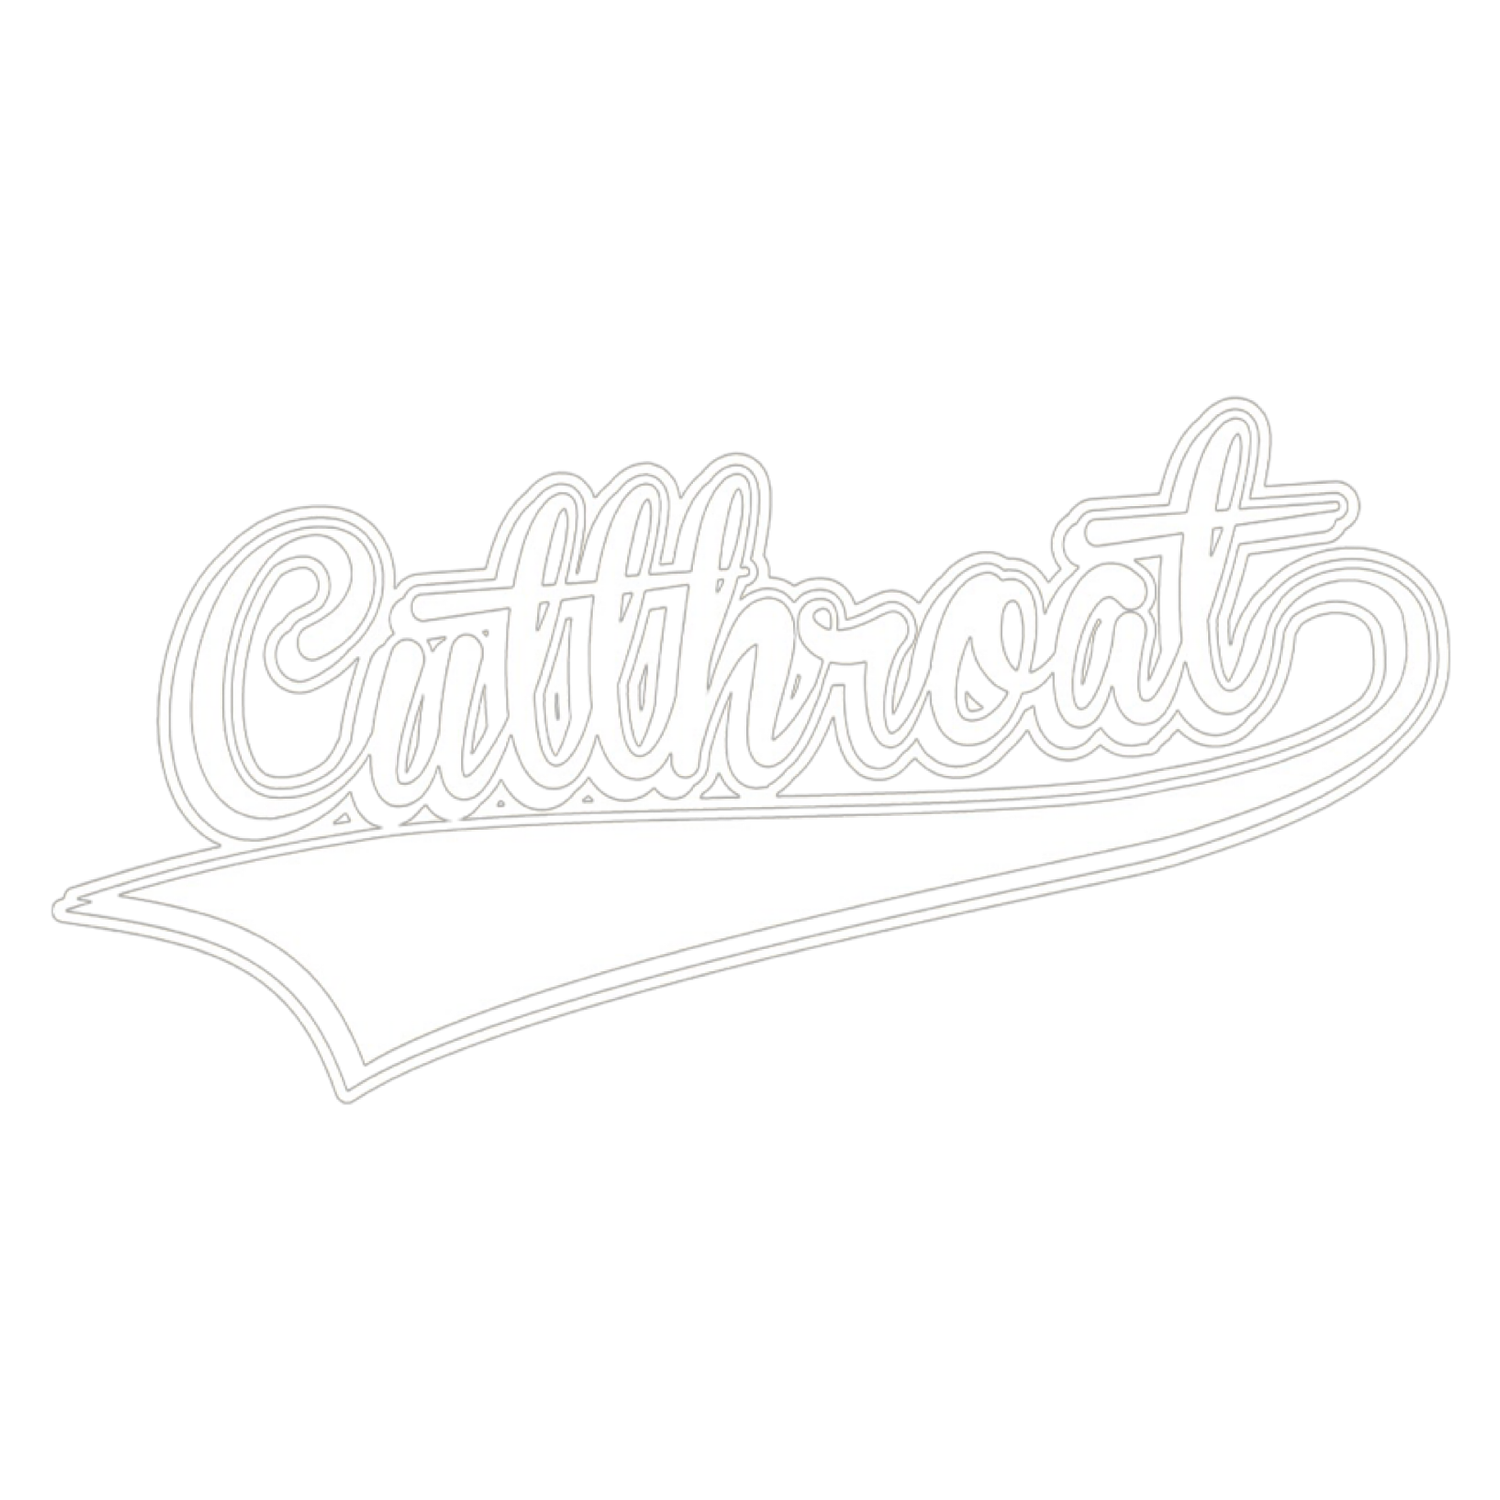 Cutthroat Mode 